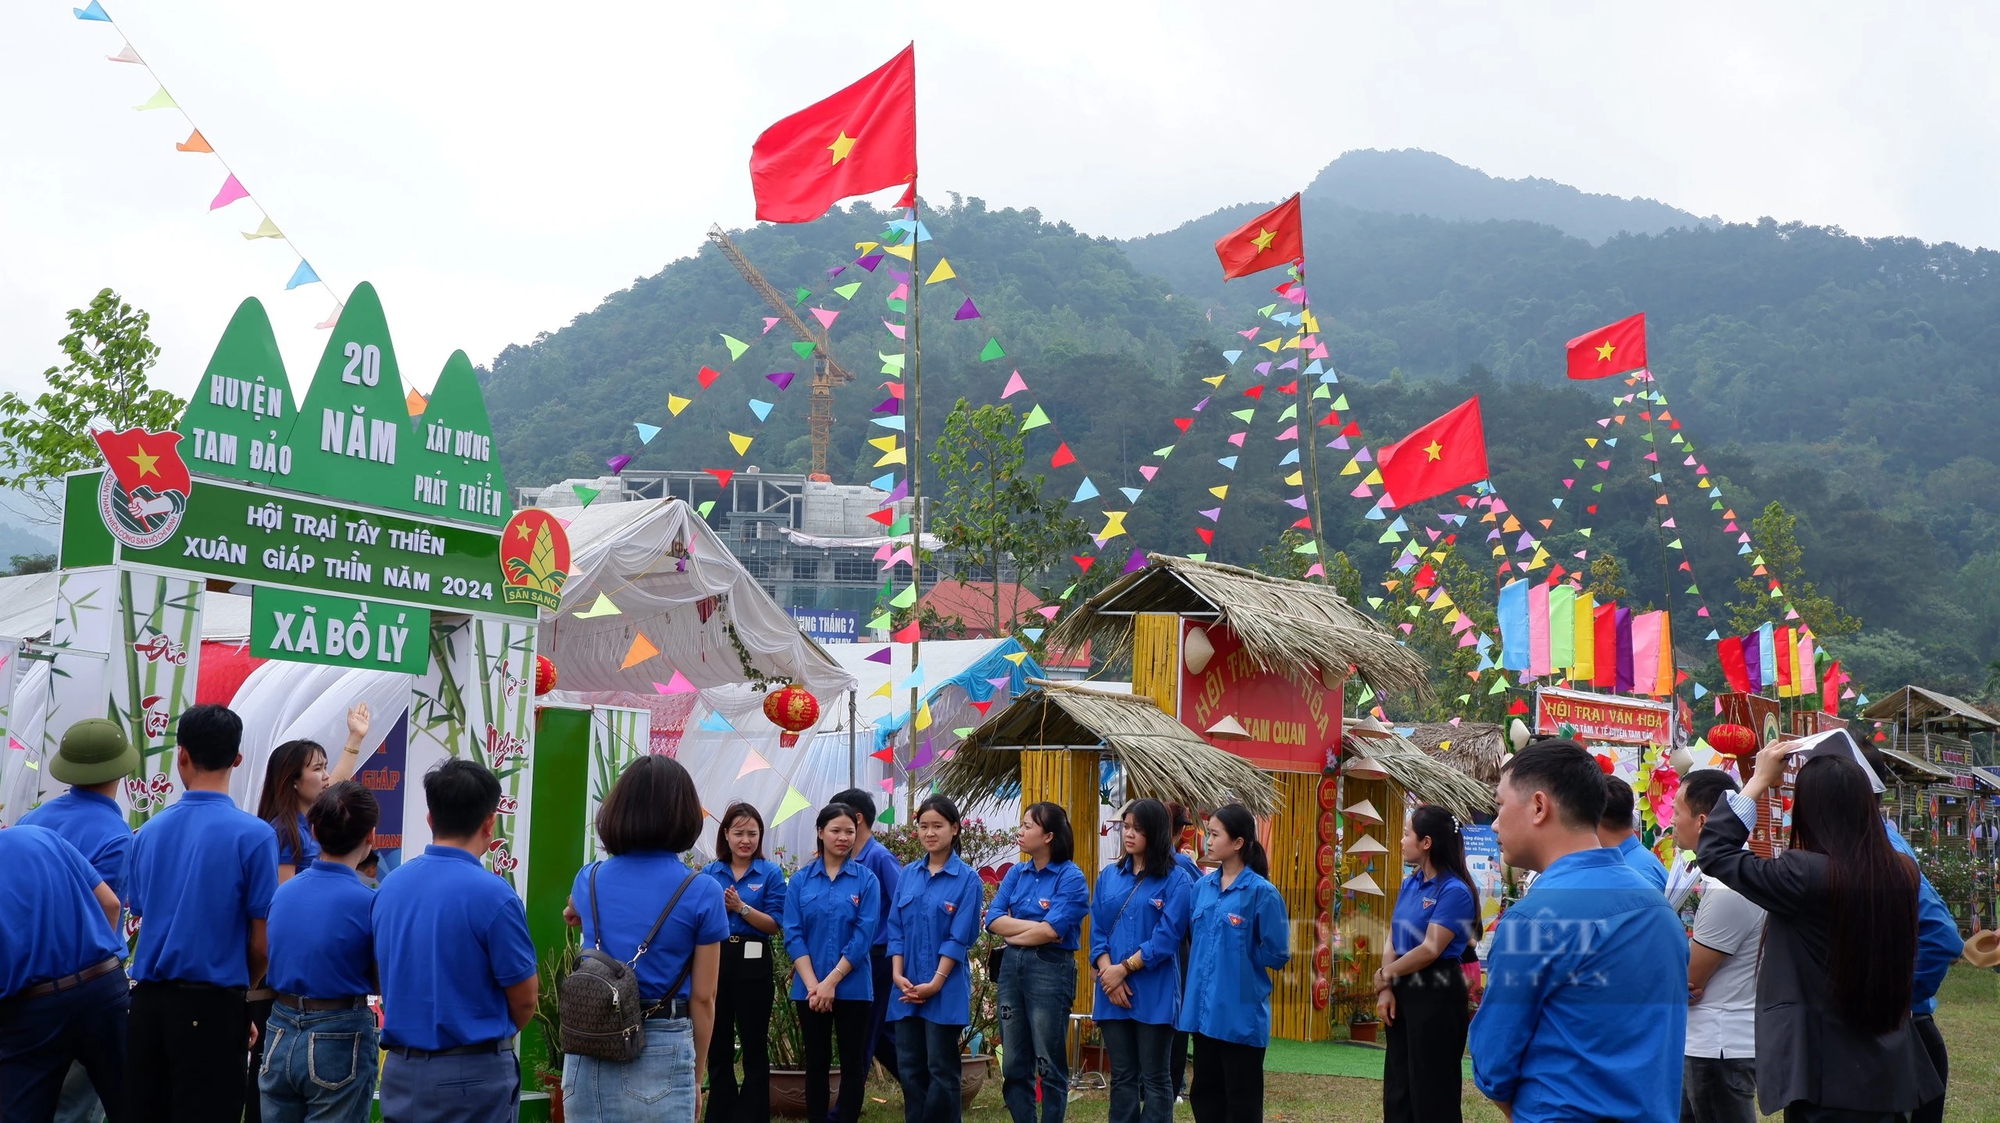 Lễ hội Tây Thiên 2024: Rực rỡ đoàn rước kiệu kéo dài 2km, thu hút hàng nghìn người theo- Ảnh 13.